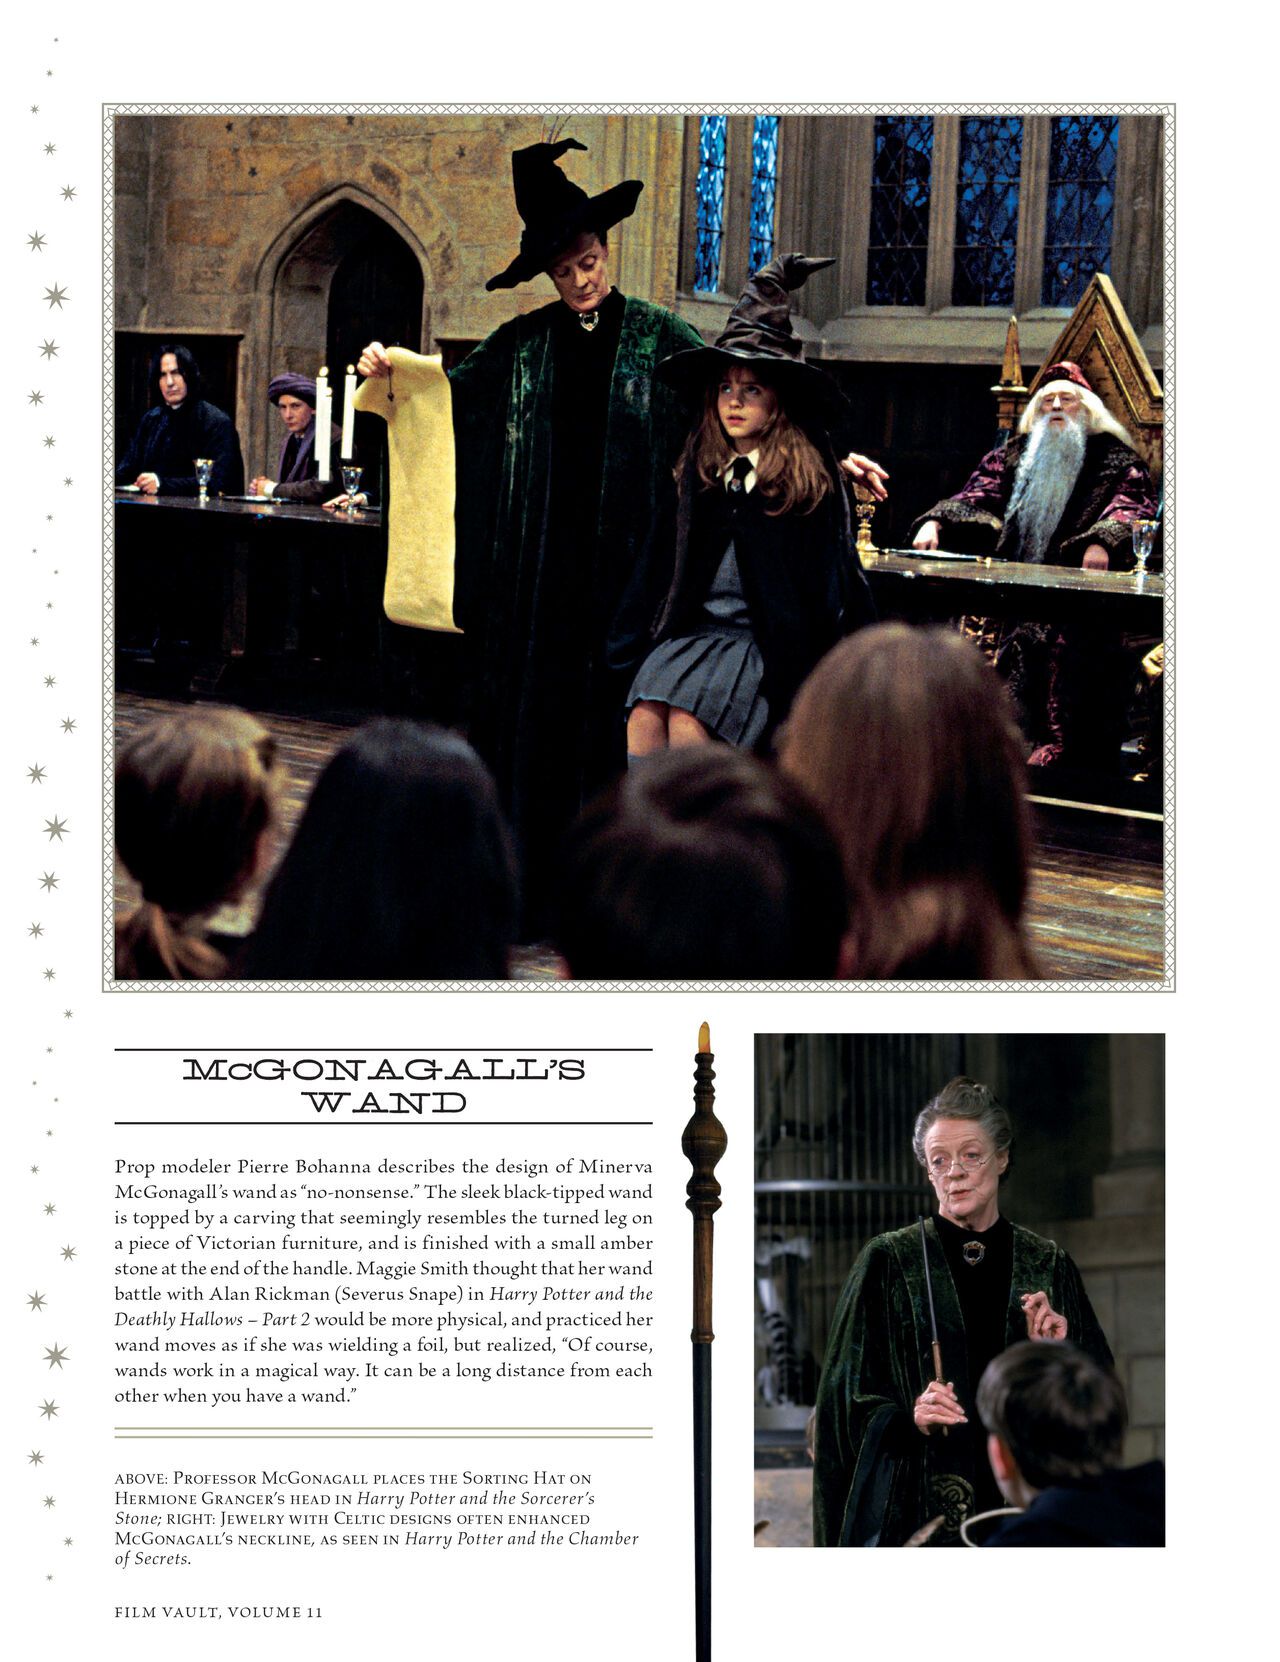 Harry Potter - Film Vault v11 - Hogwarts Professors and Staff 28